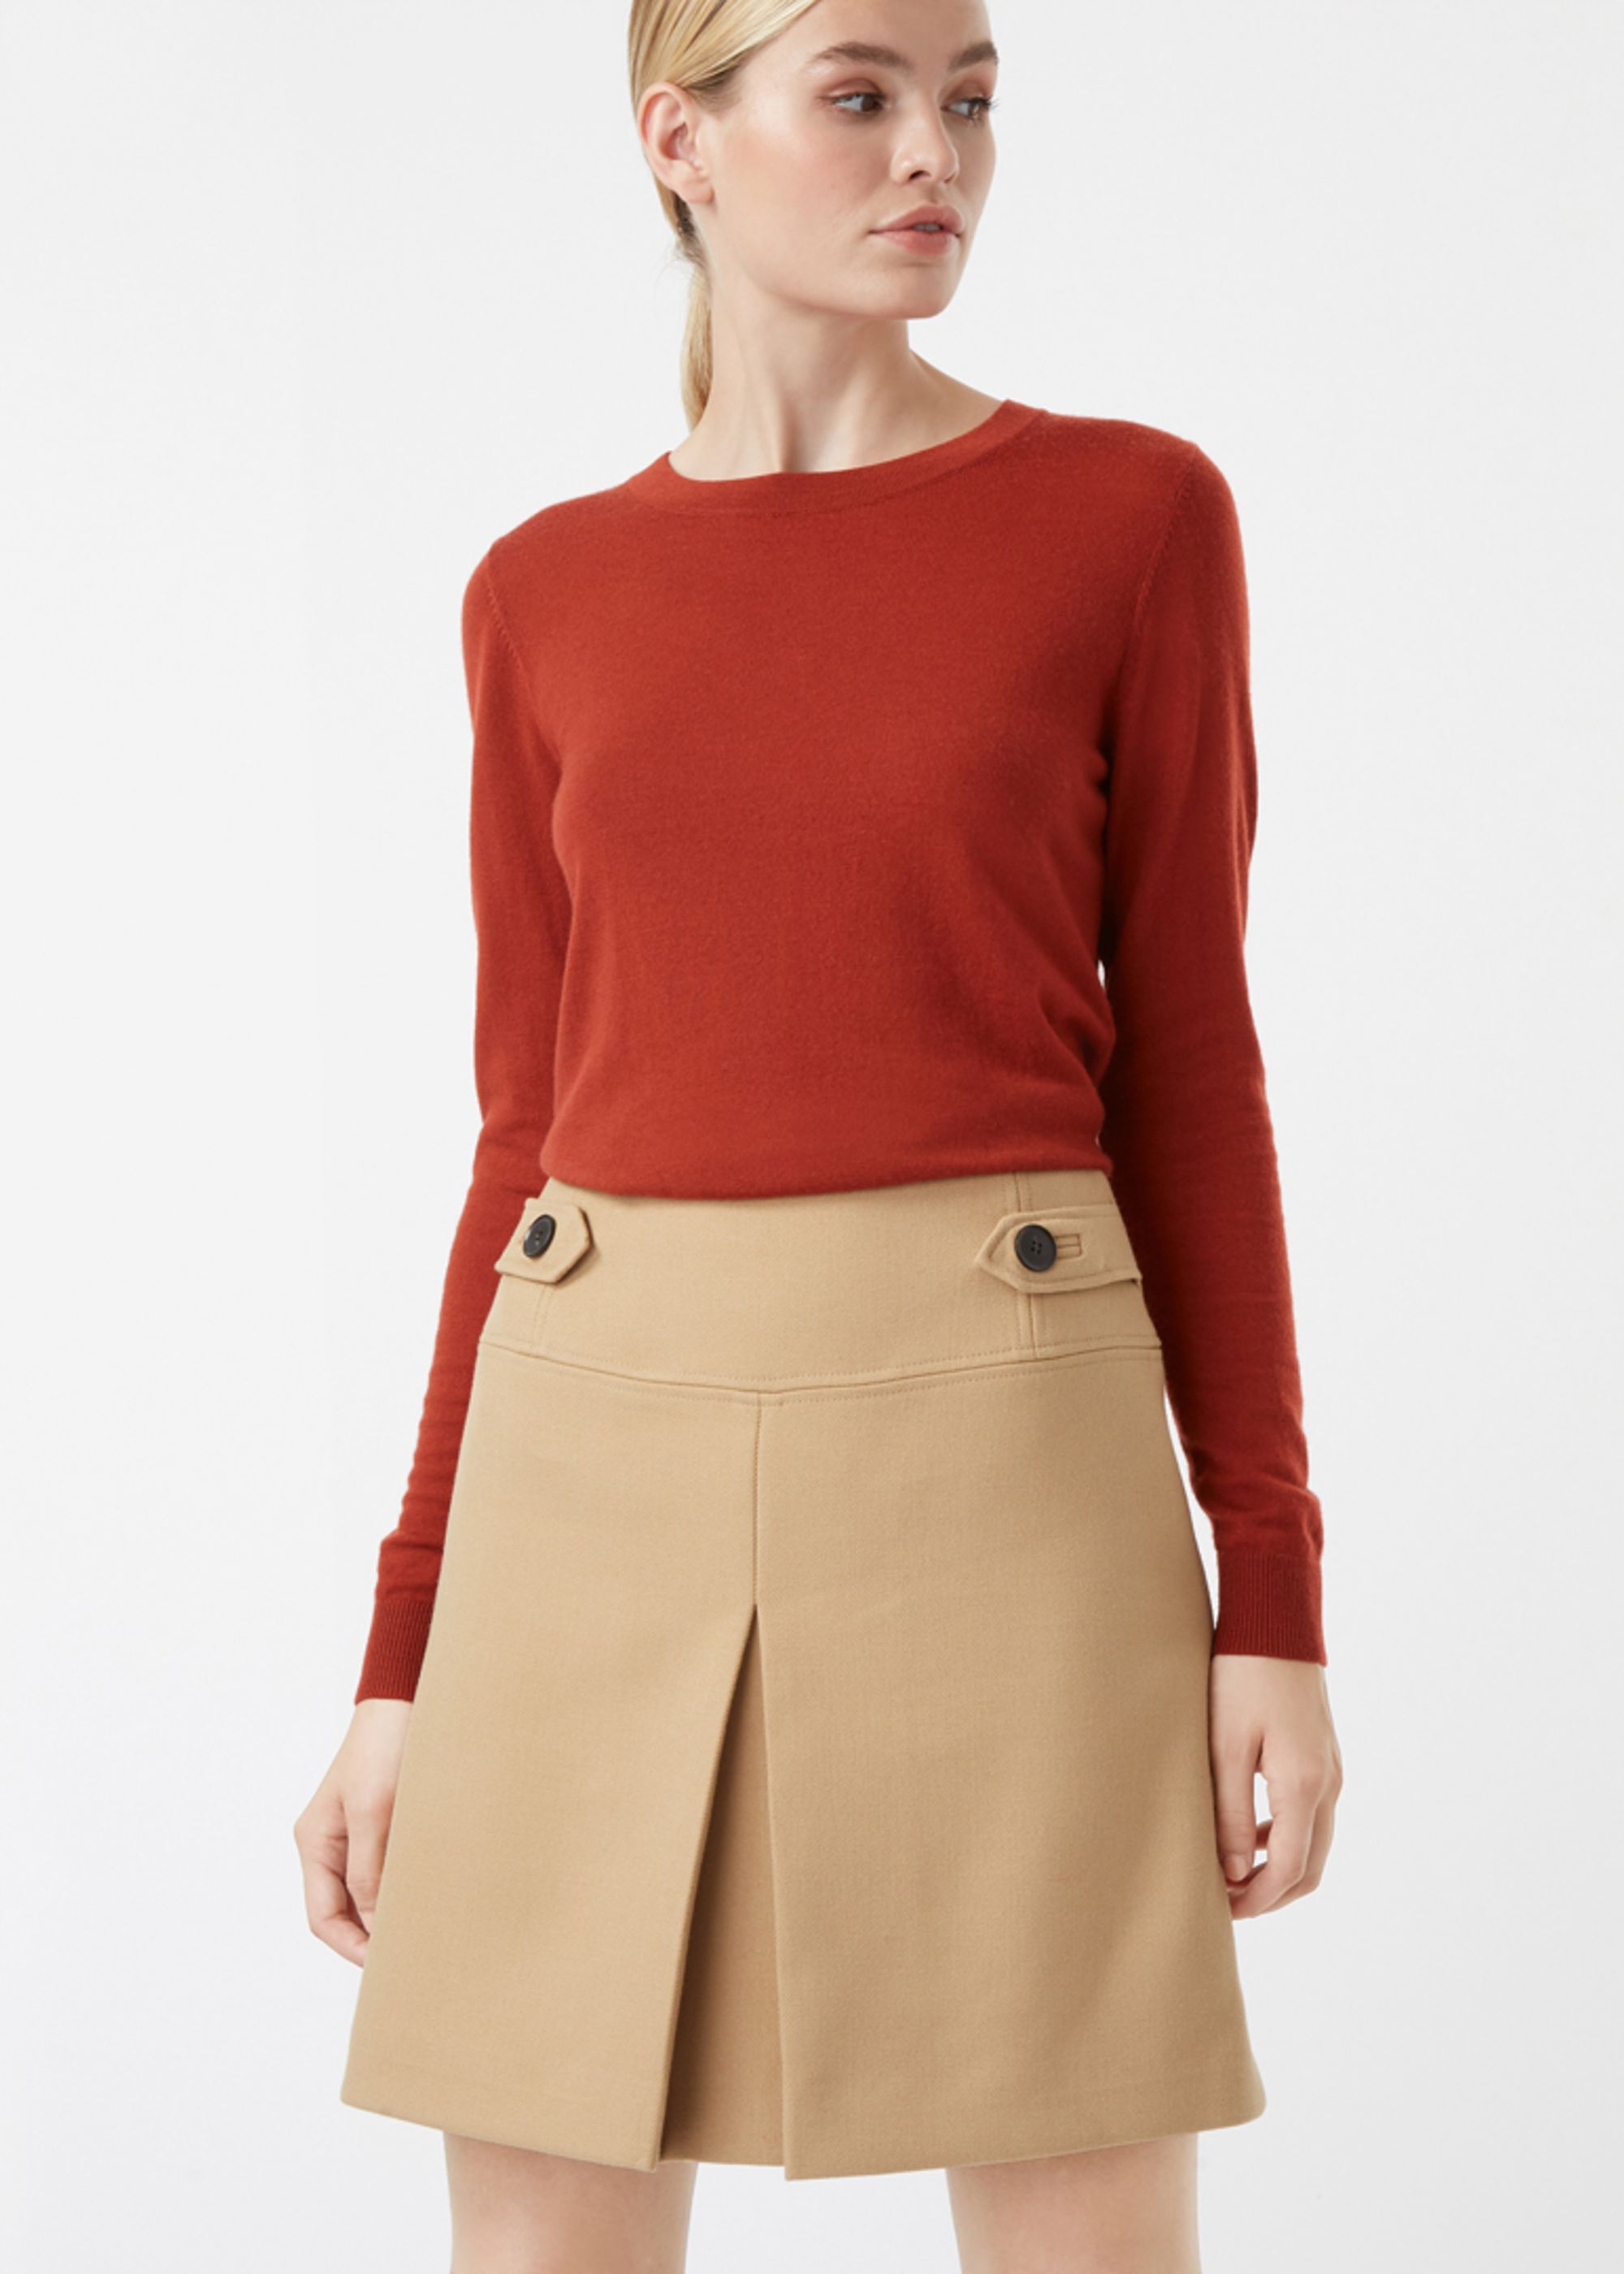 Hobbs Lynette Skirt Short A-Line | eBay